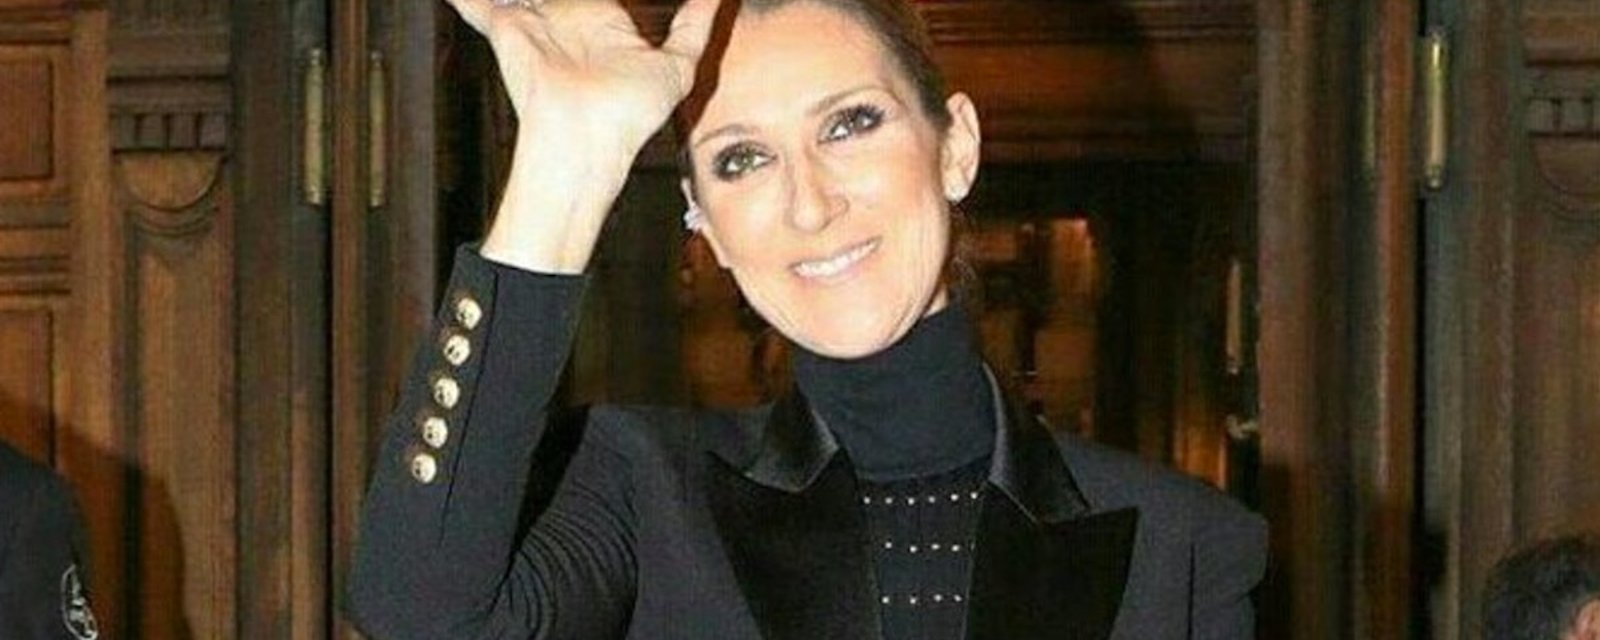 Céline Dion jette le monde à ses pieds avec son nouveau look! 